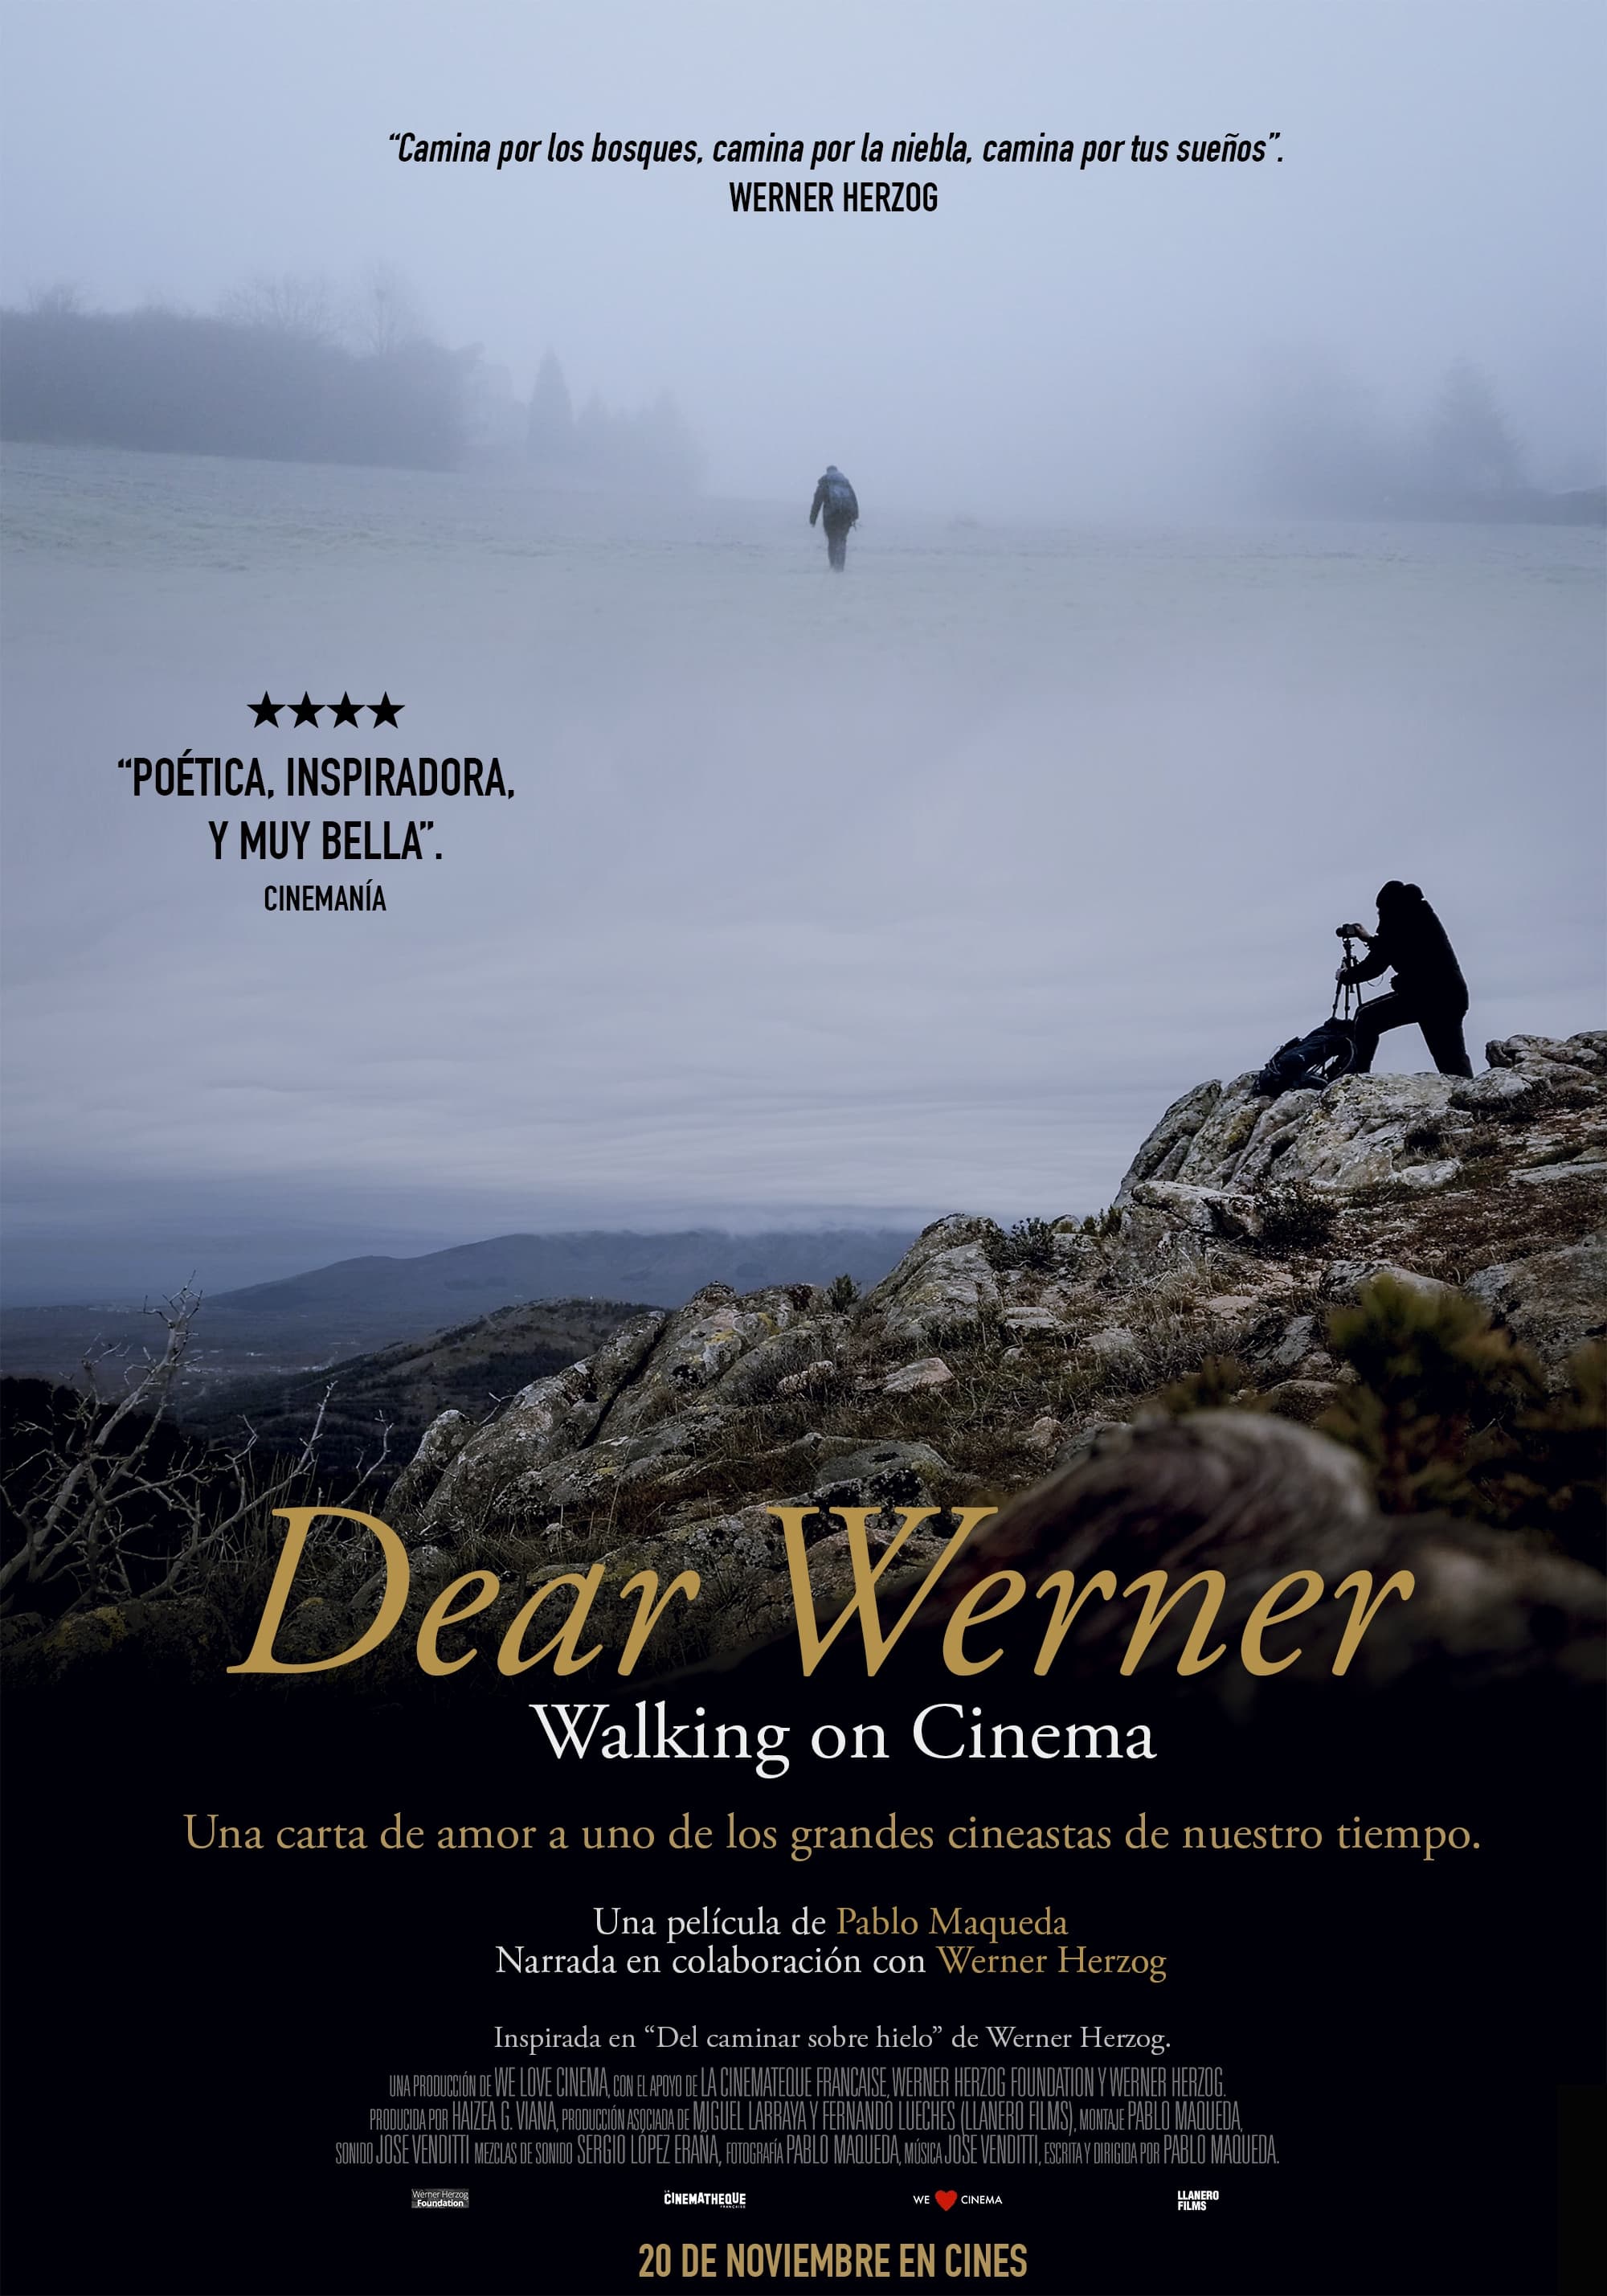 Dear Werner (Walking on Cinema) (2020)